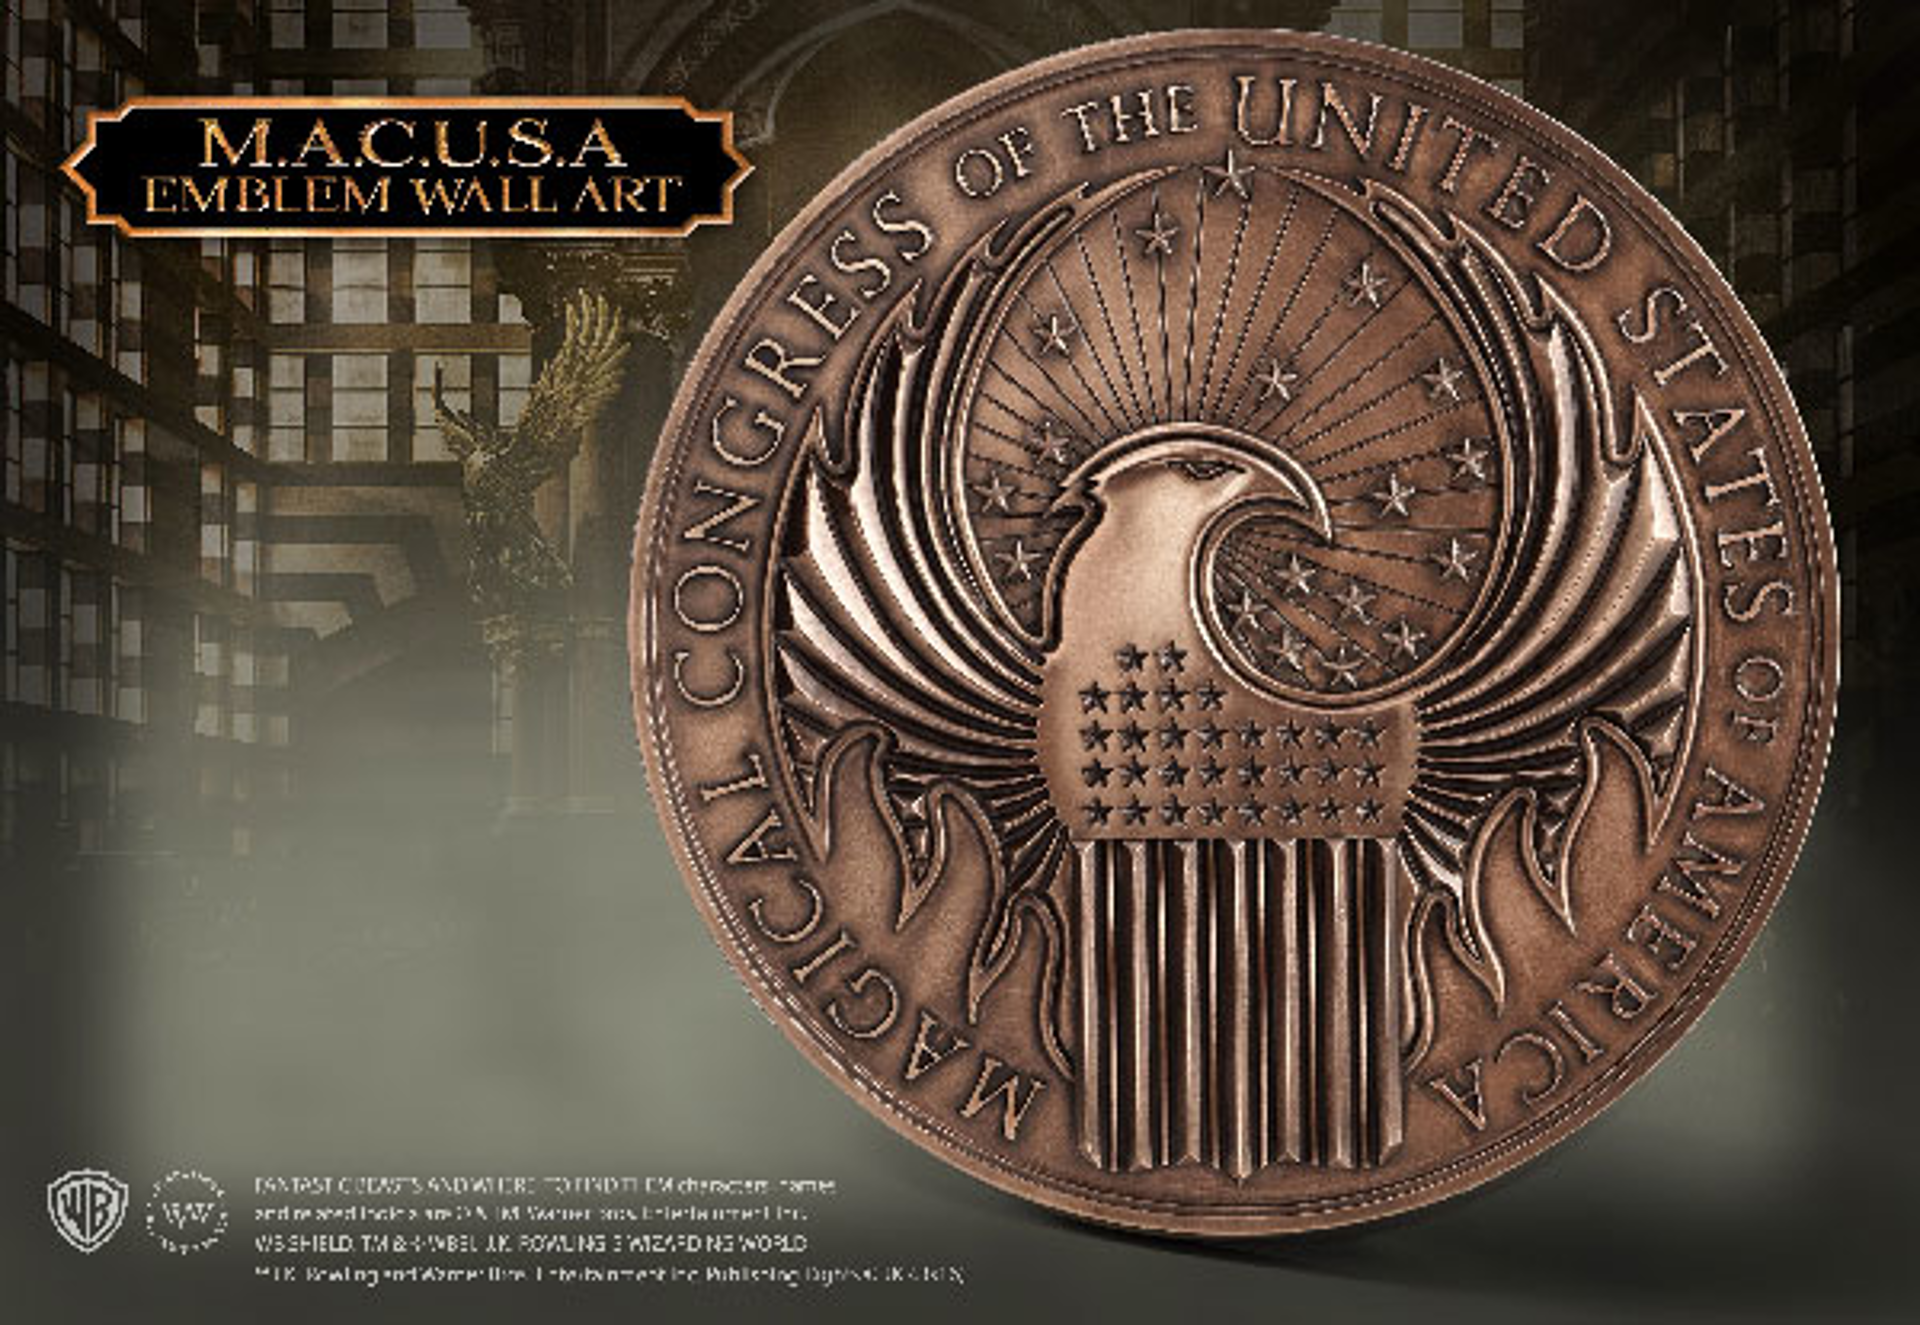 Fantastic Beasts - MACUSA Emblem Wall Art